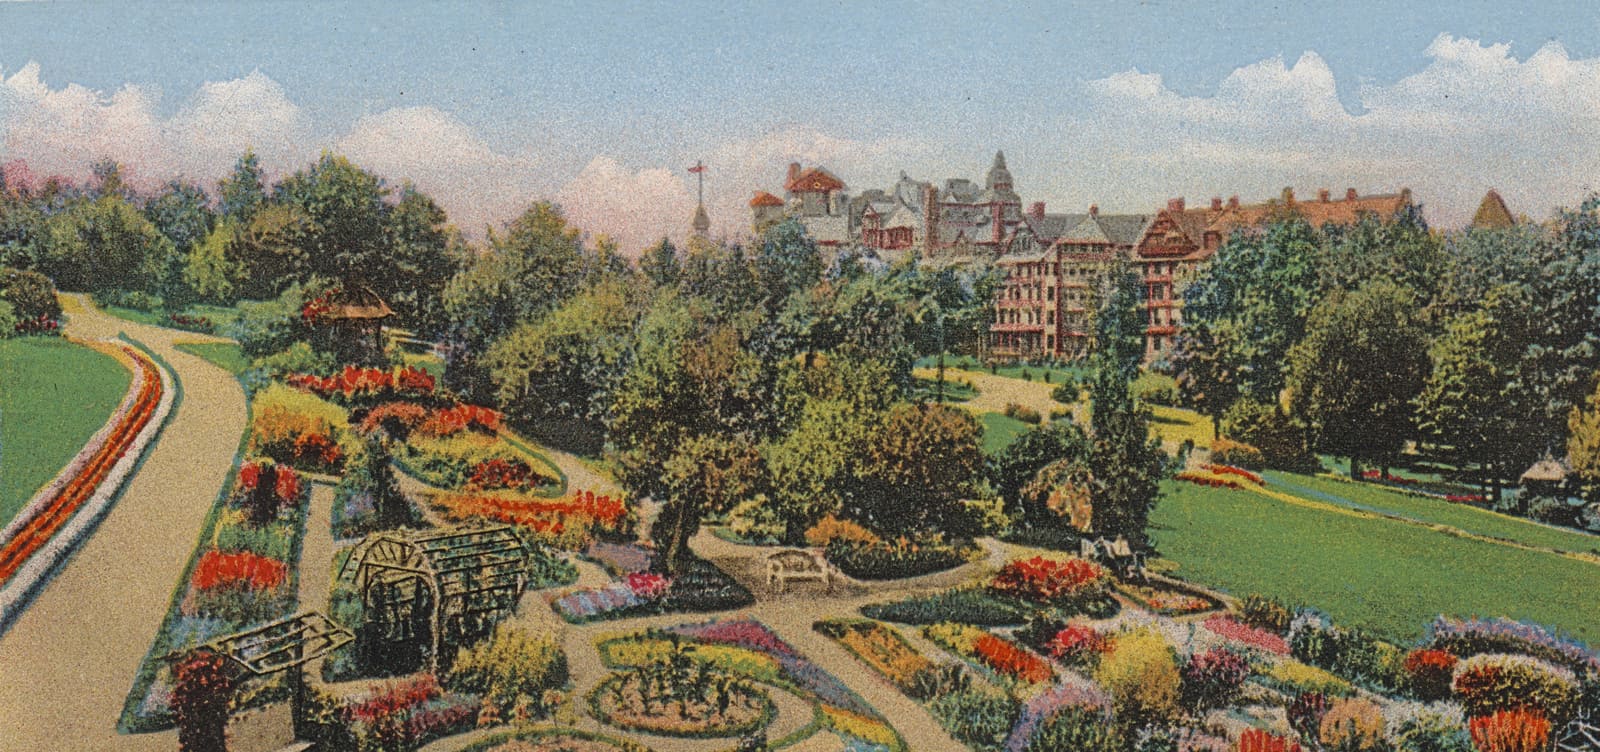 Post Card of Mohonk Garden